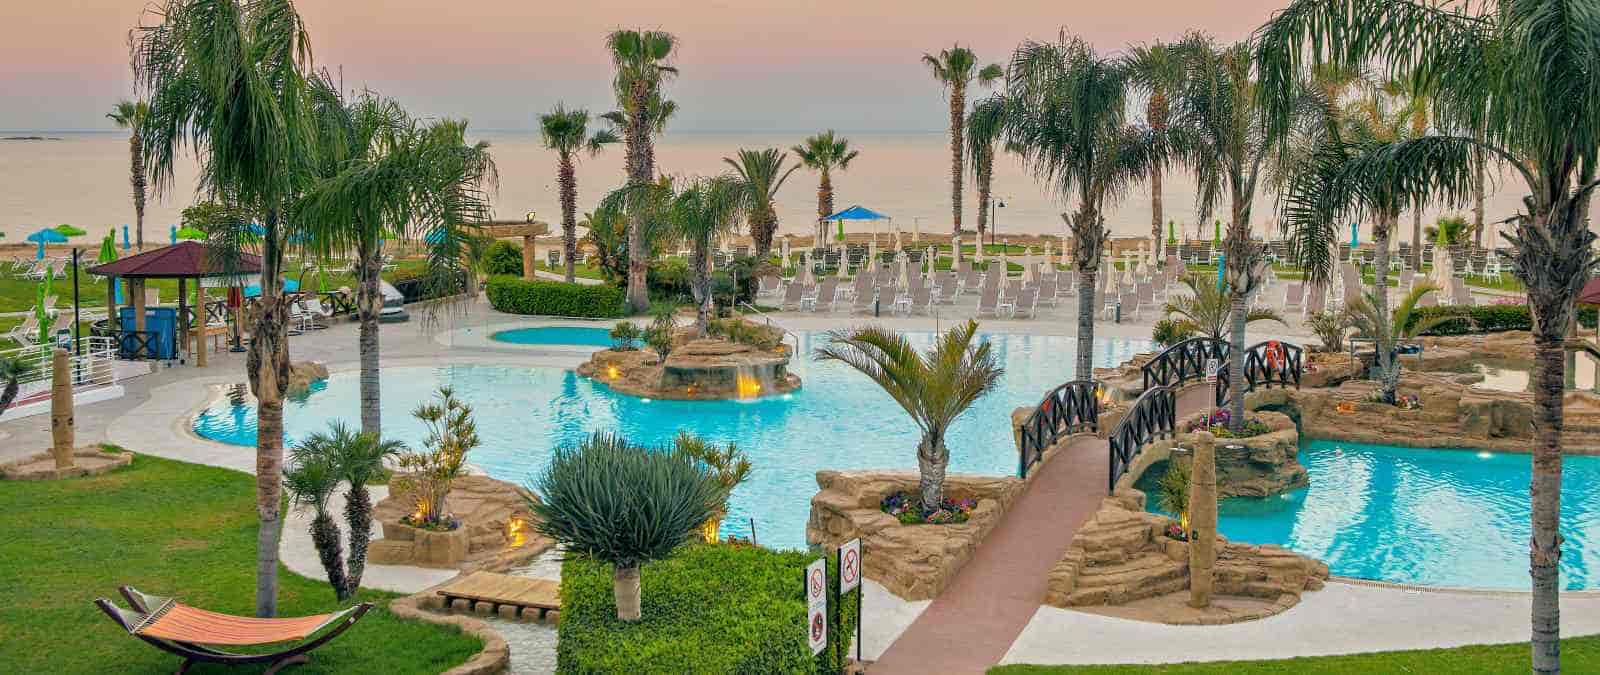 Leonardo Cyprus Hotels & Resorts